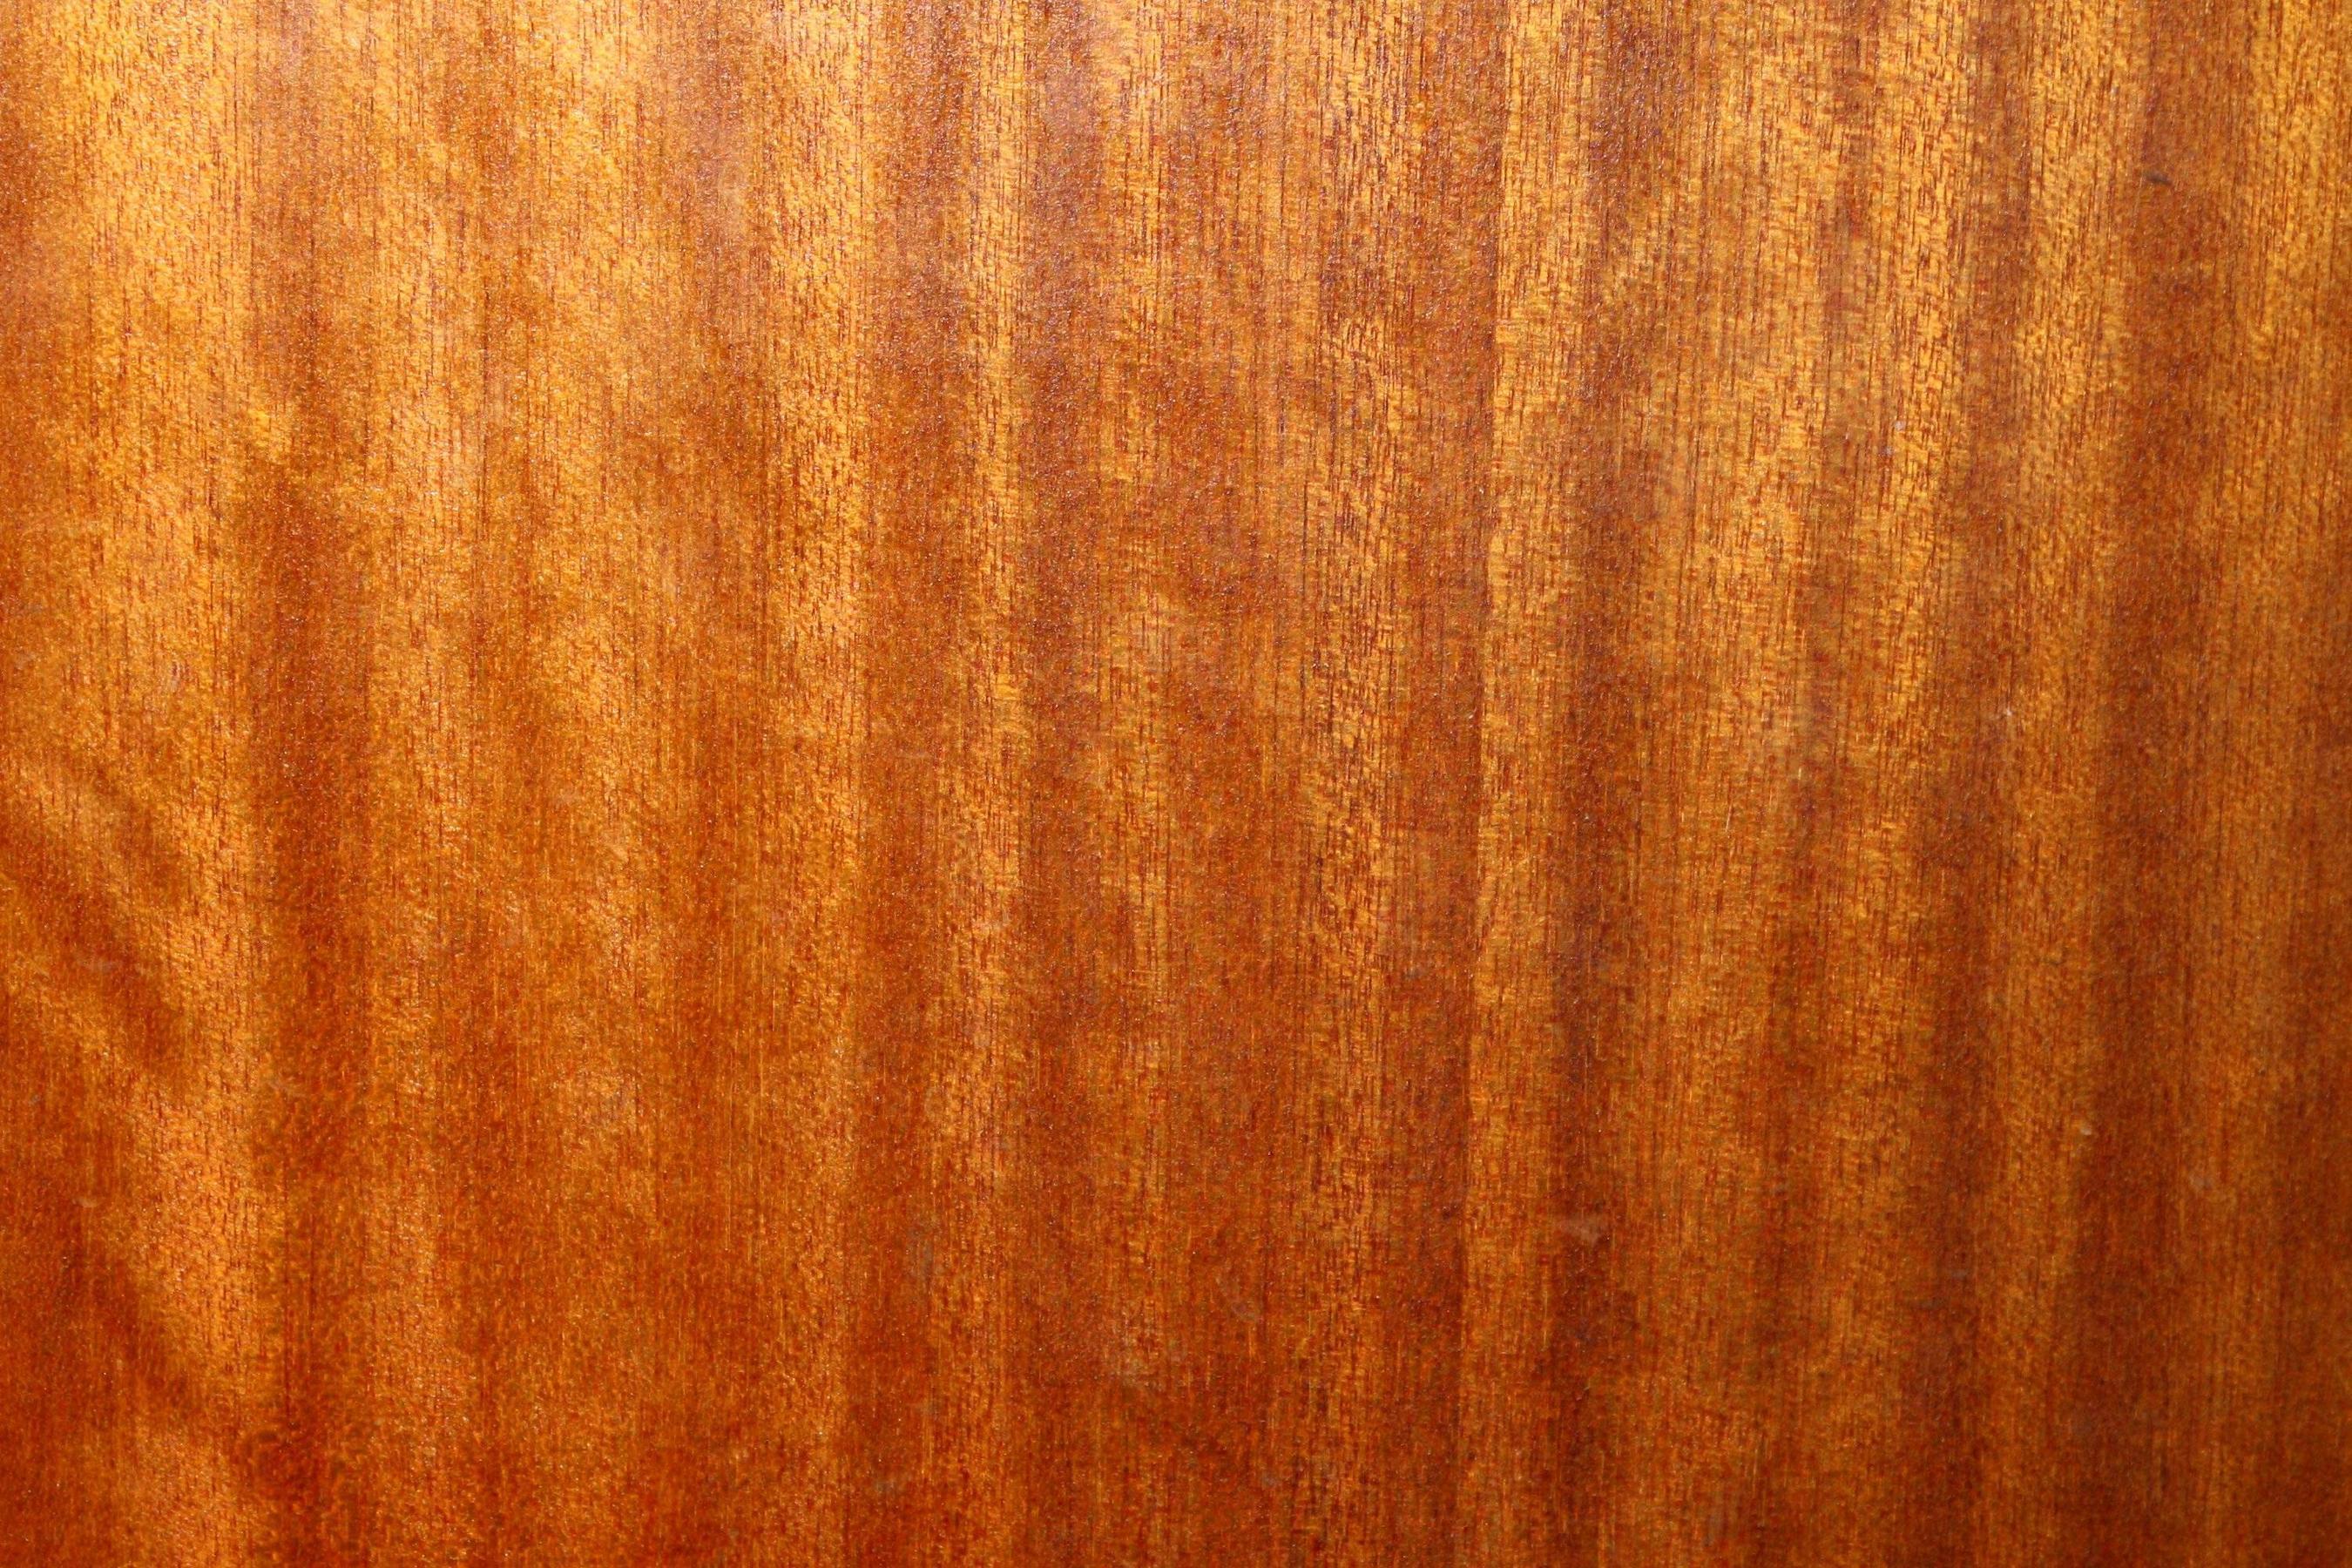 Wood Grain Texture Picture. Free Photograph. Photo Public Domain